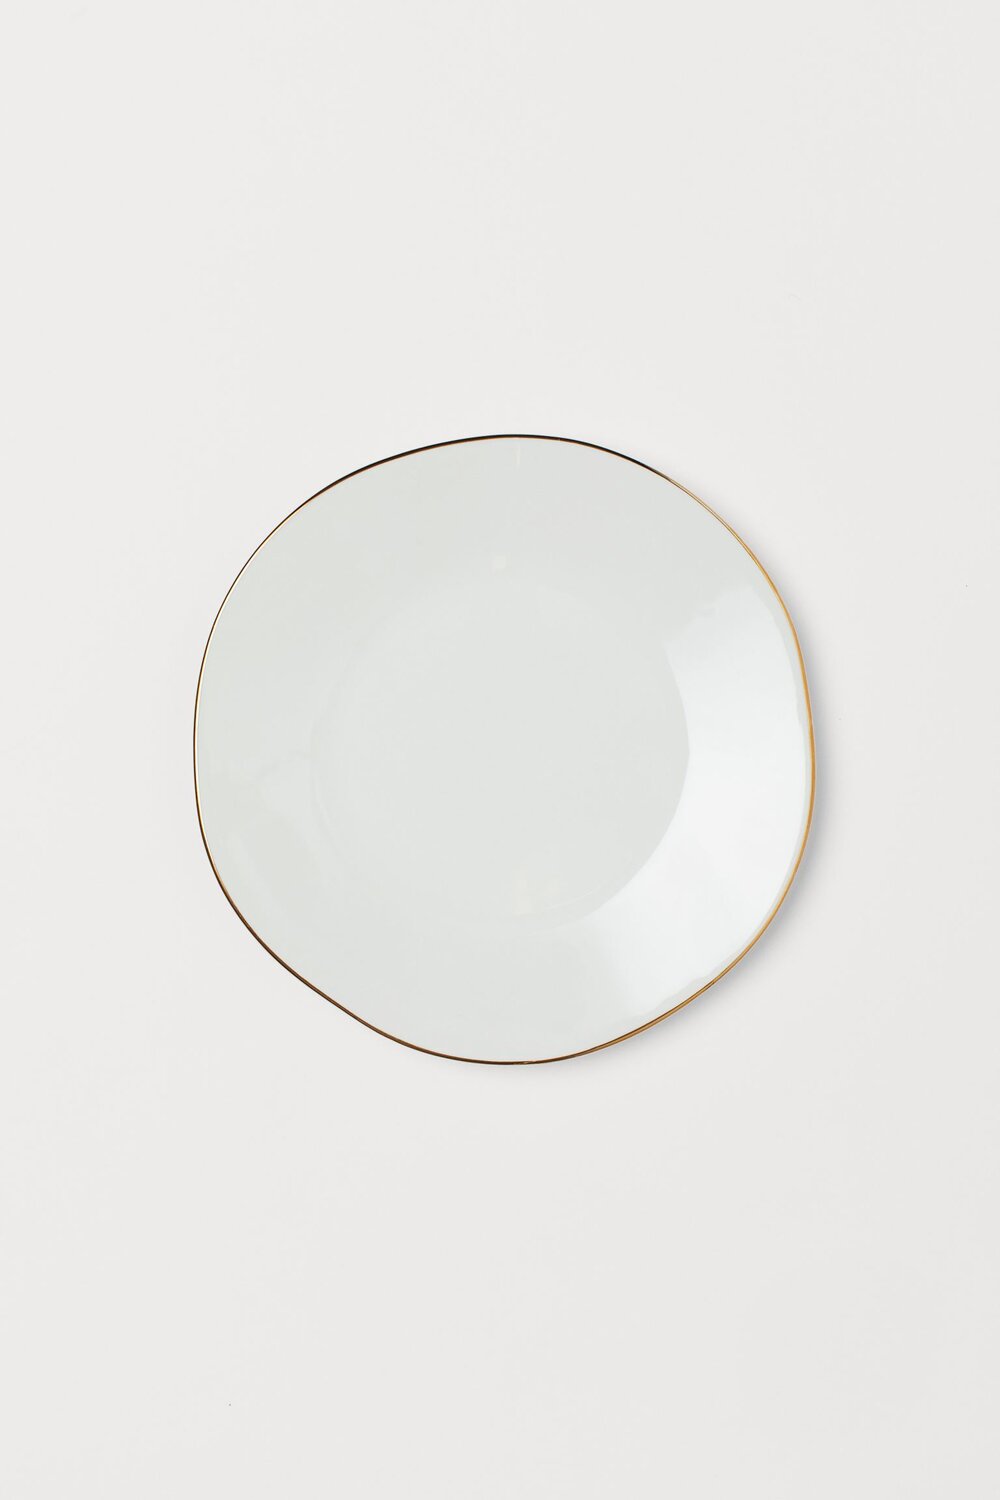 White ceramic gold rimmed plate